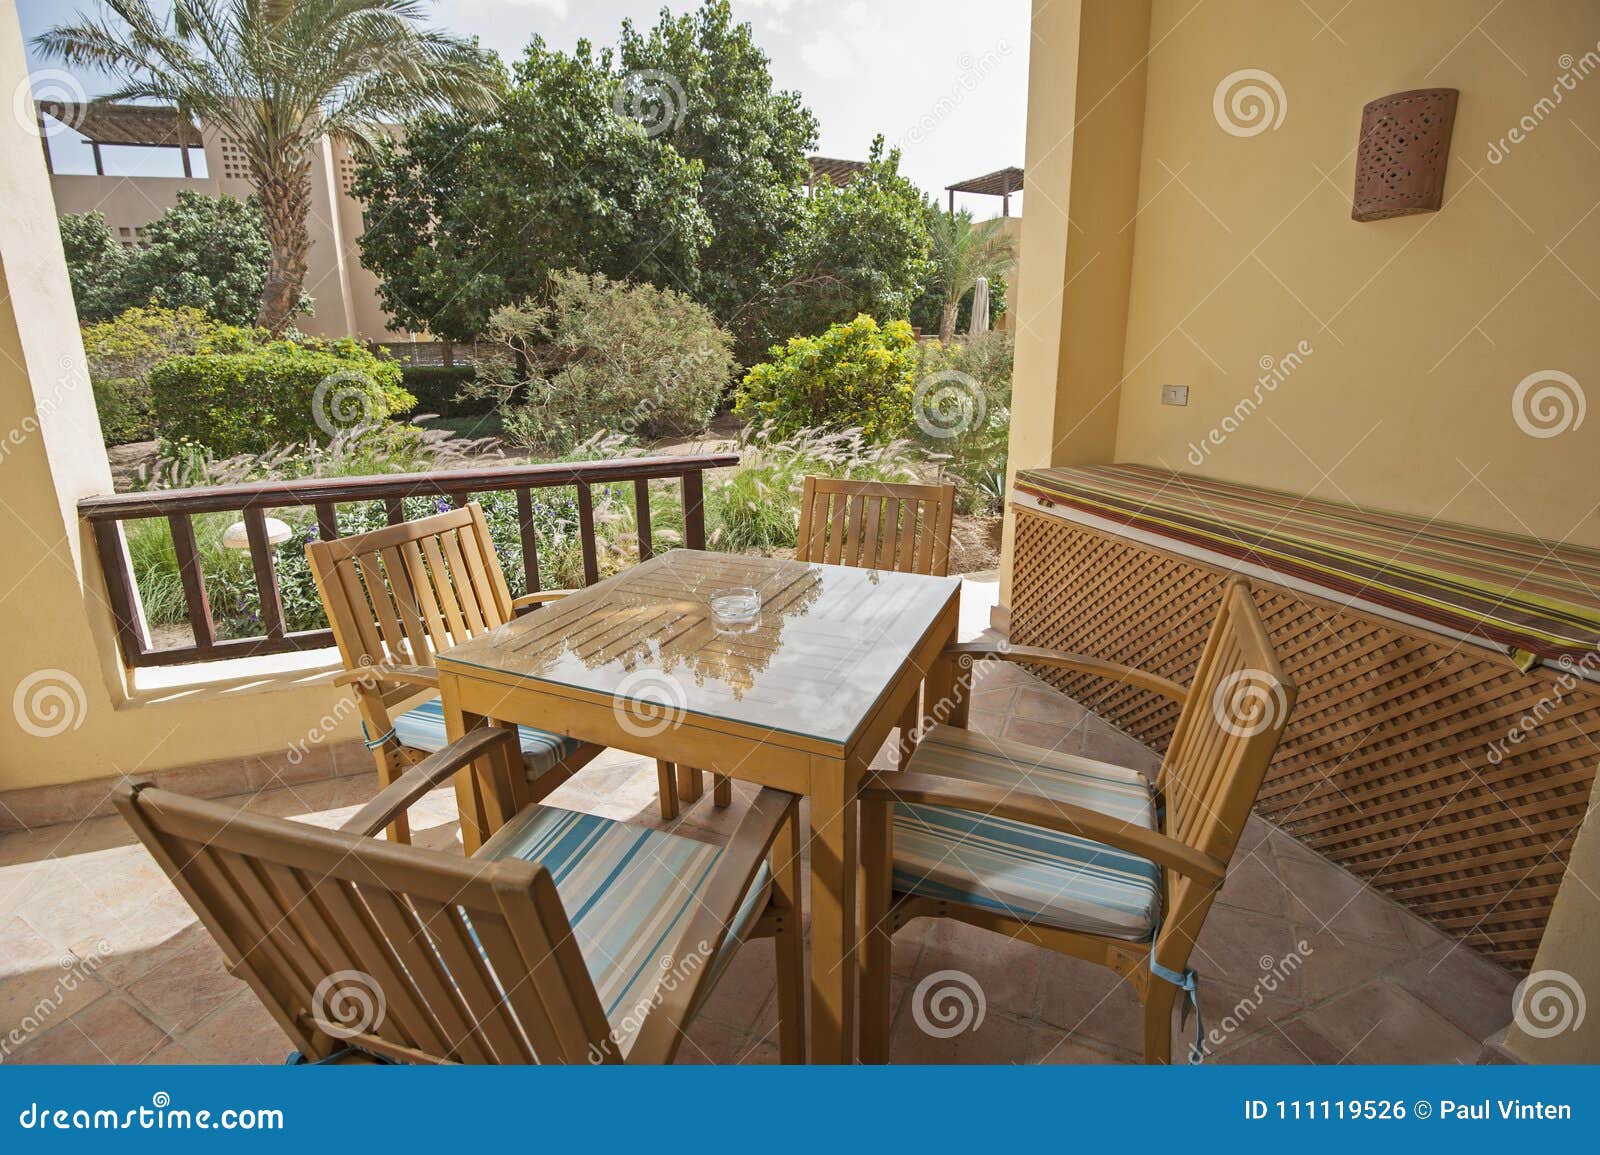 露台在豪华热带假日别墅的大阳台区域. 热带暑假手段的豪华别墅展示家与庭院和桌椅子的大阳台露台